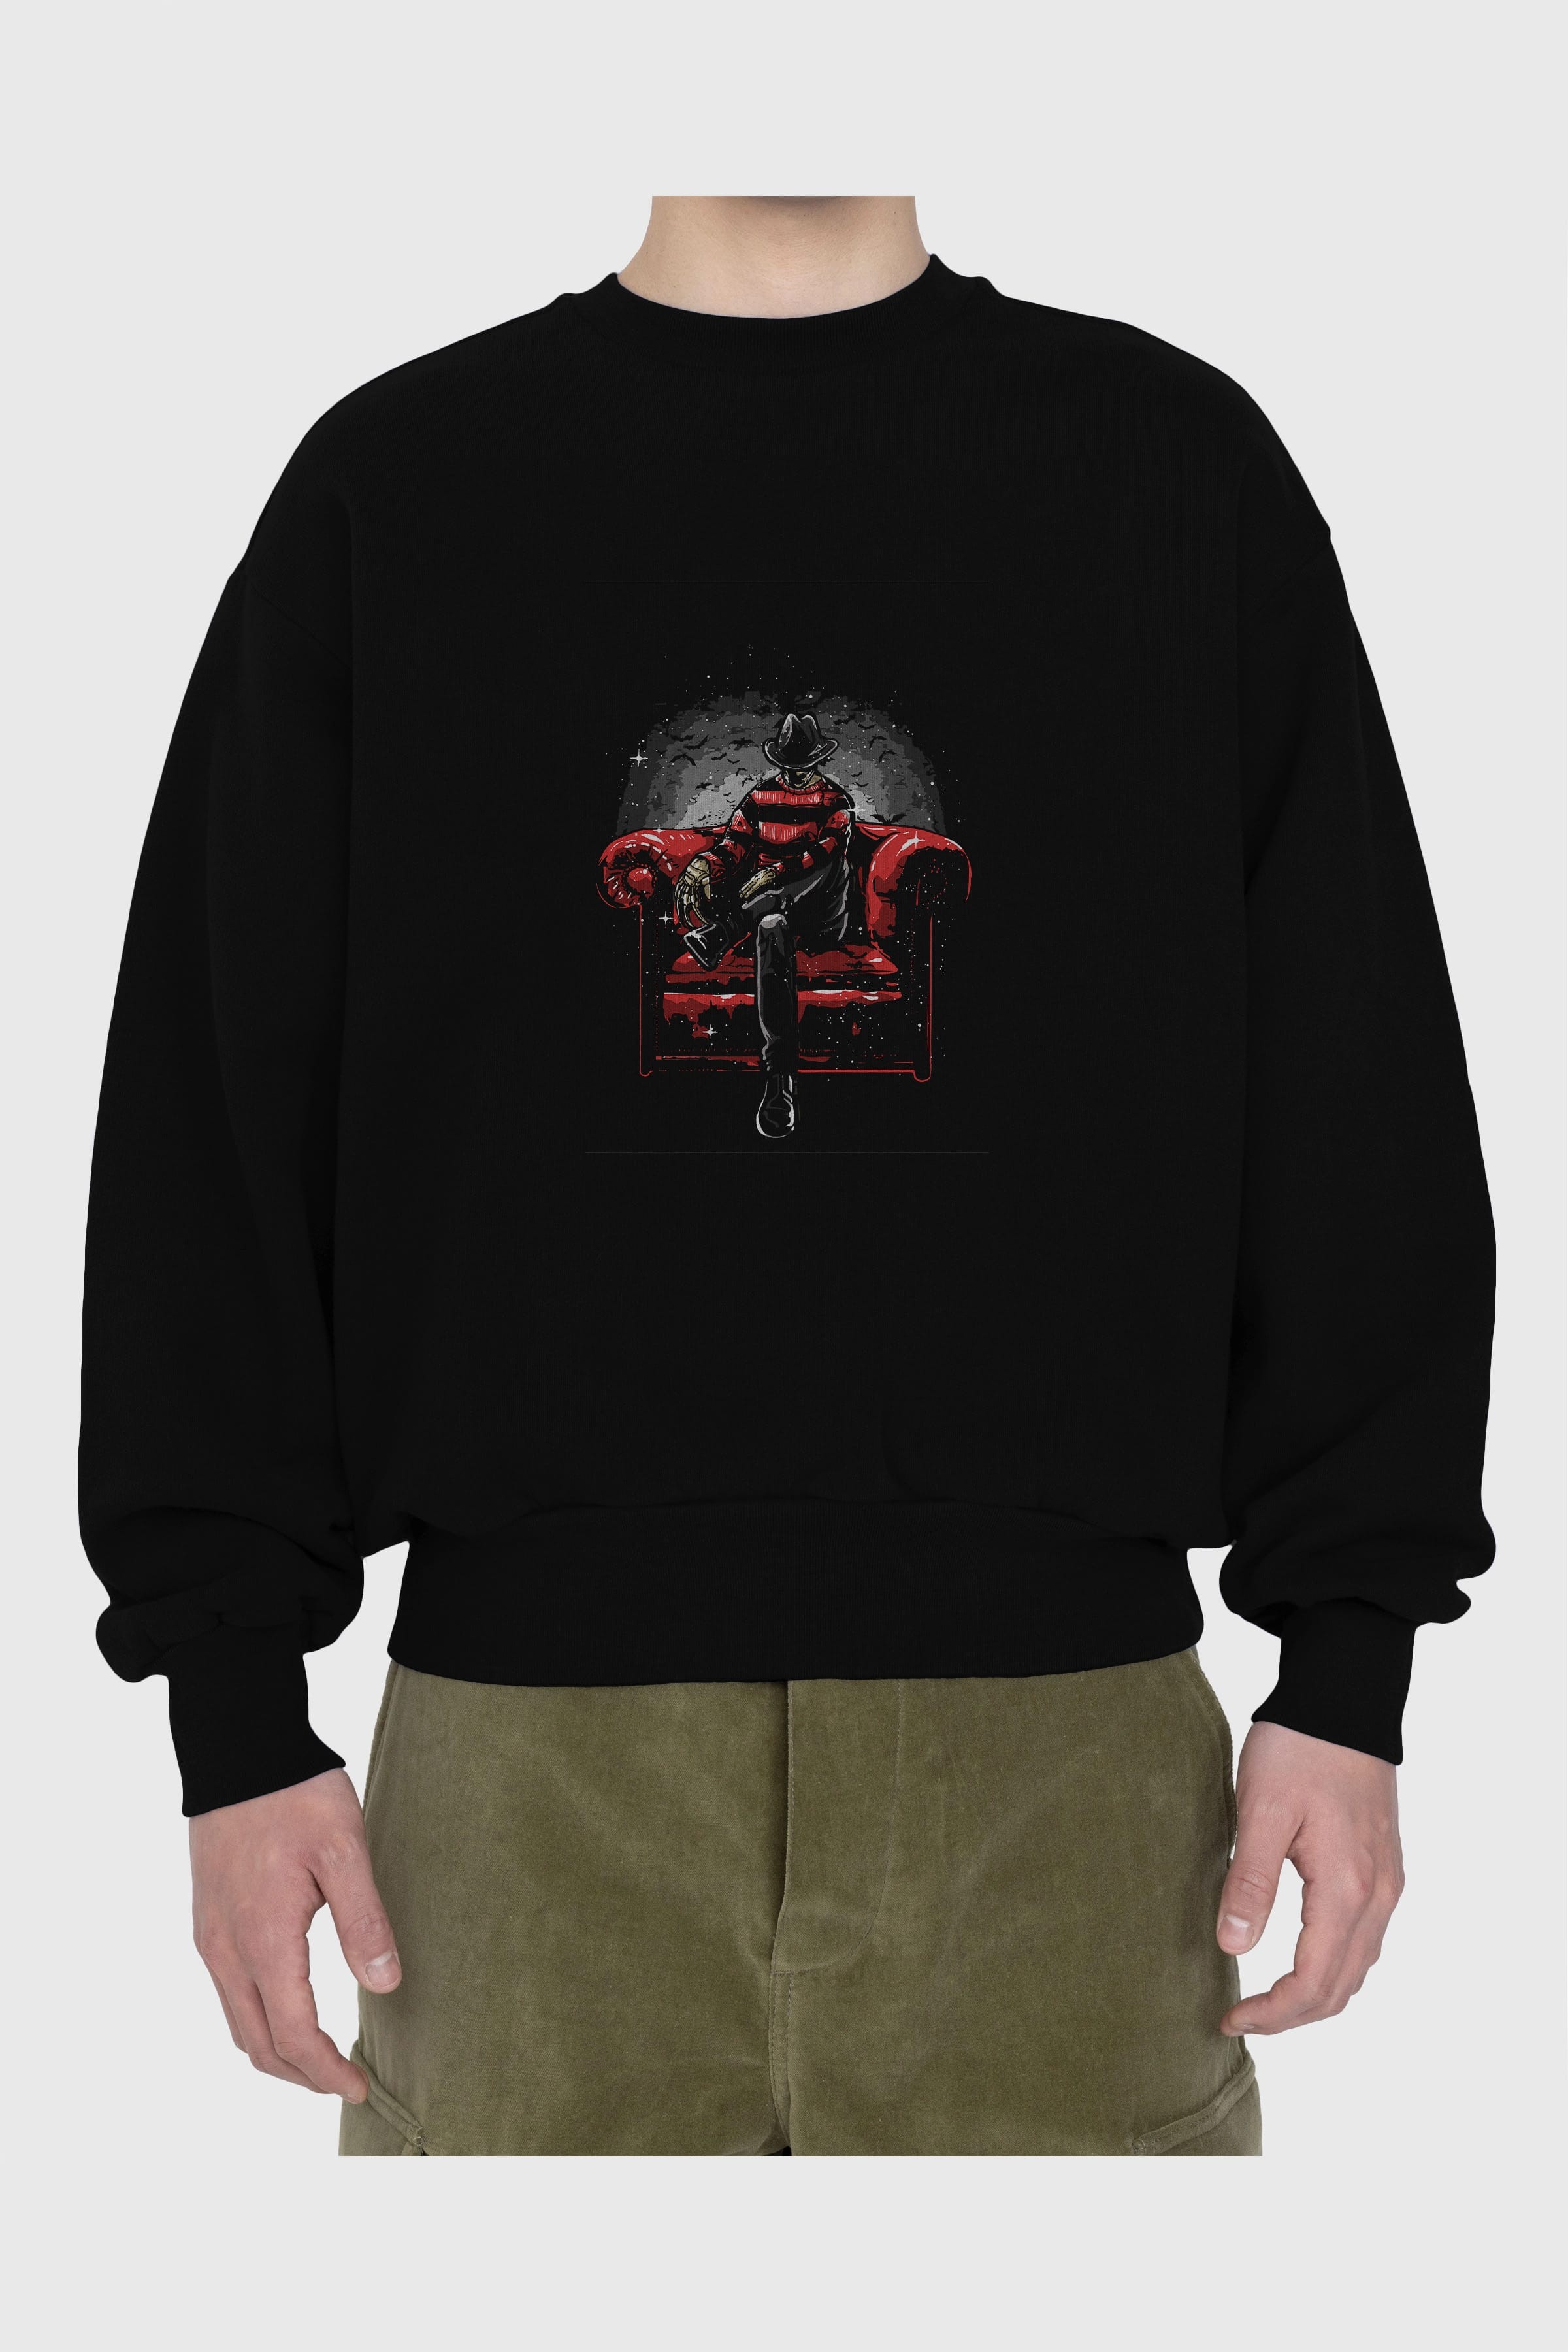 Nightmare Side Ön Baskılı Oversize Sweatshirt Erkek Kadın Unisex